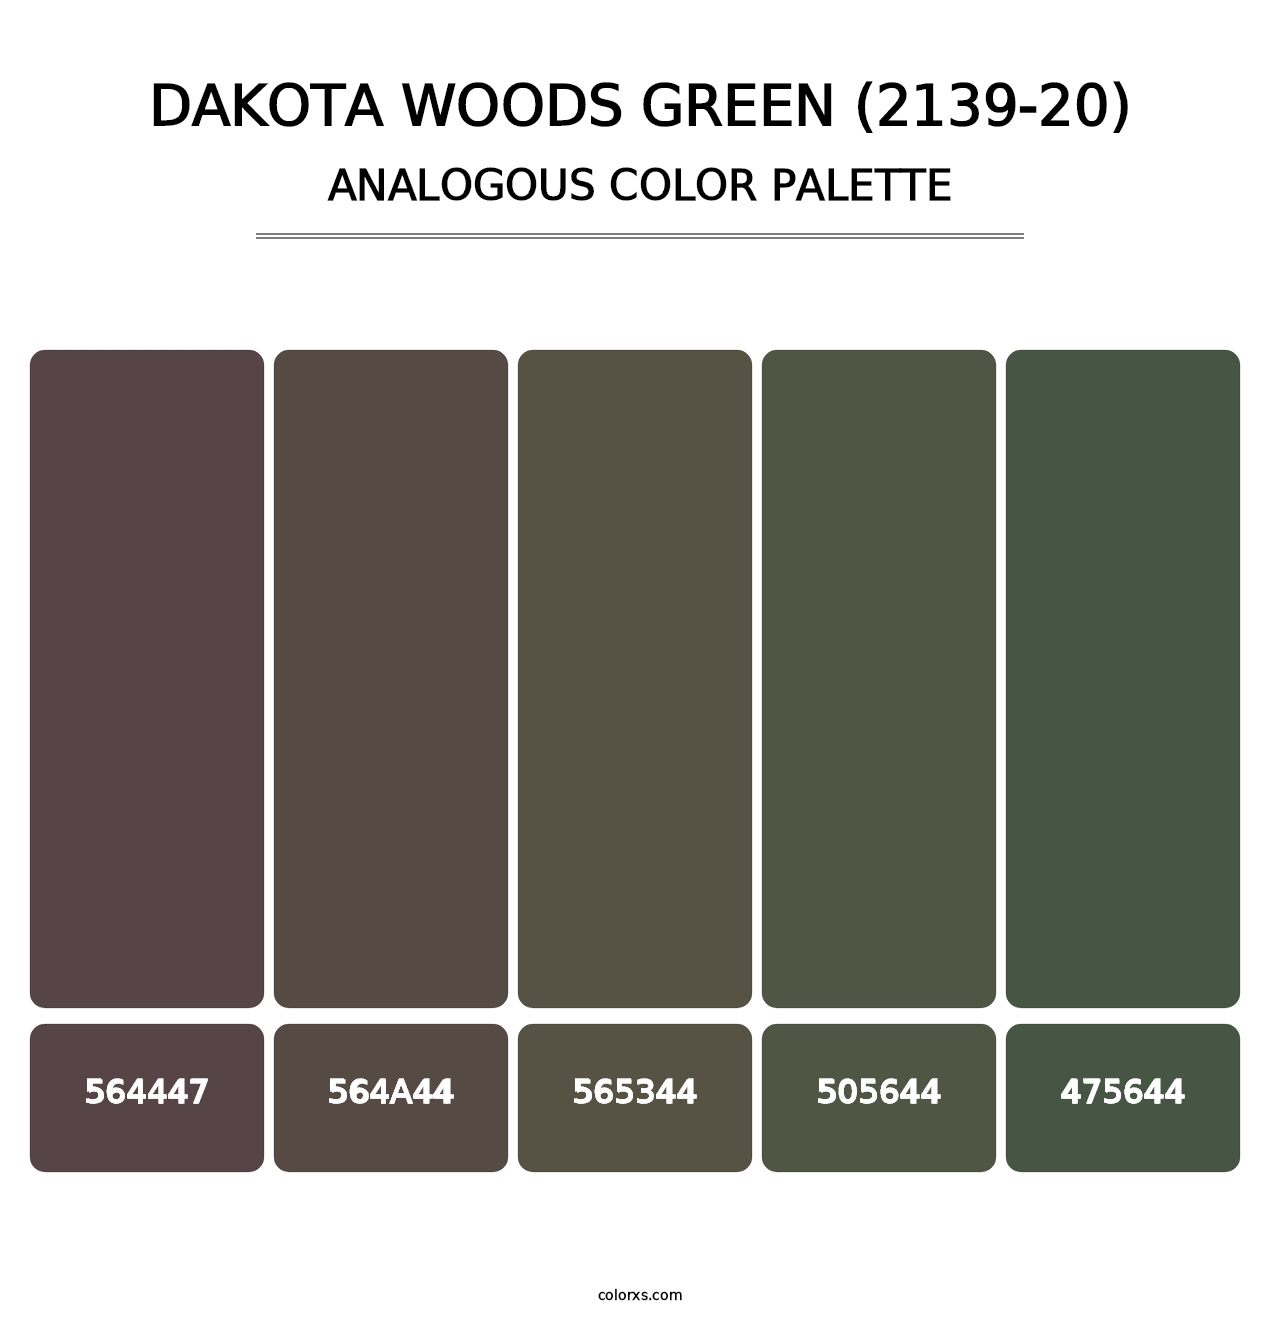 Dakota Woods Green (2139-20) - Analogous Color Palette